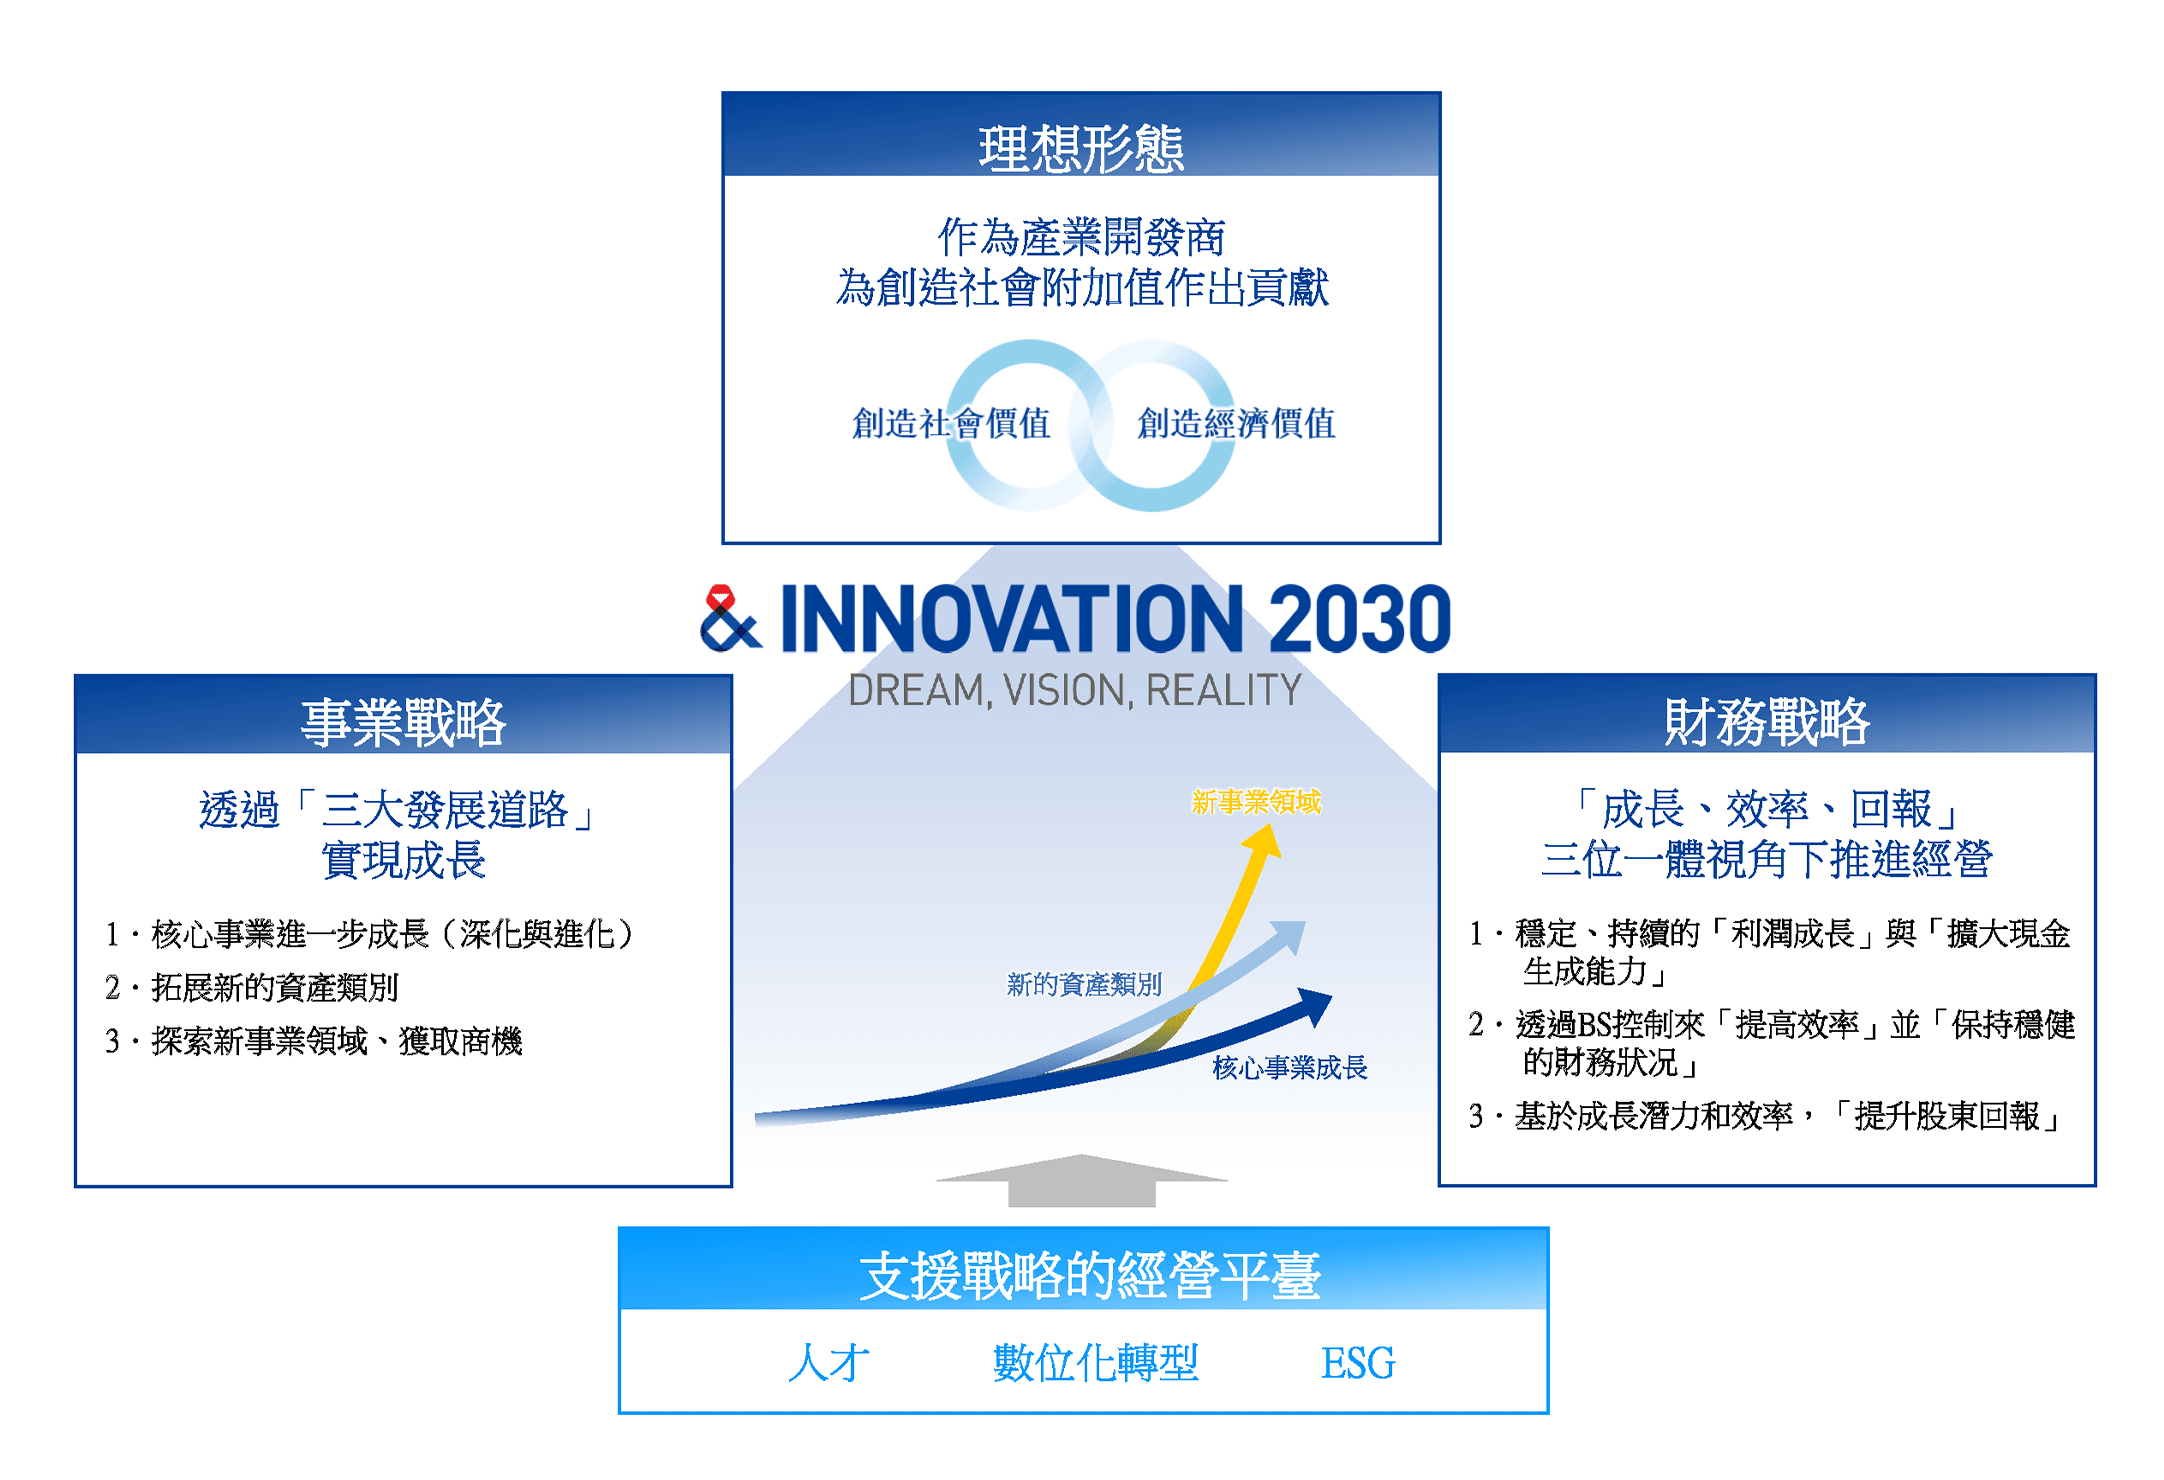 & INNOVATION 2030